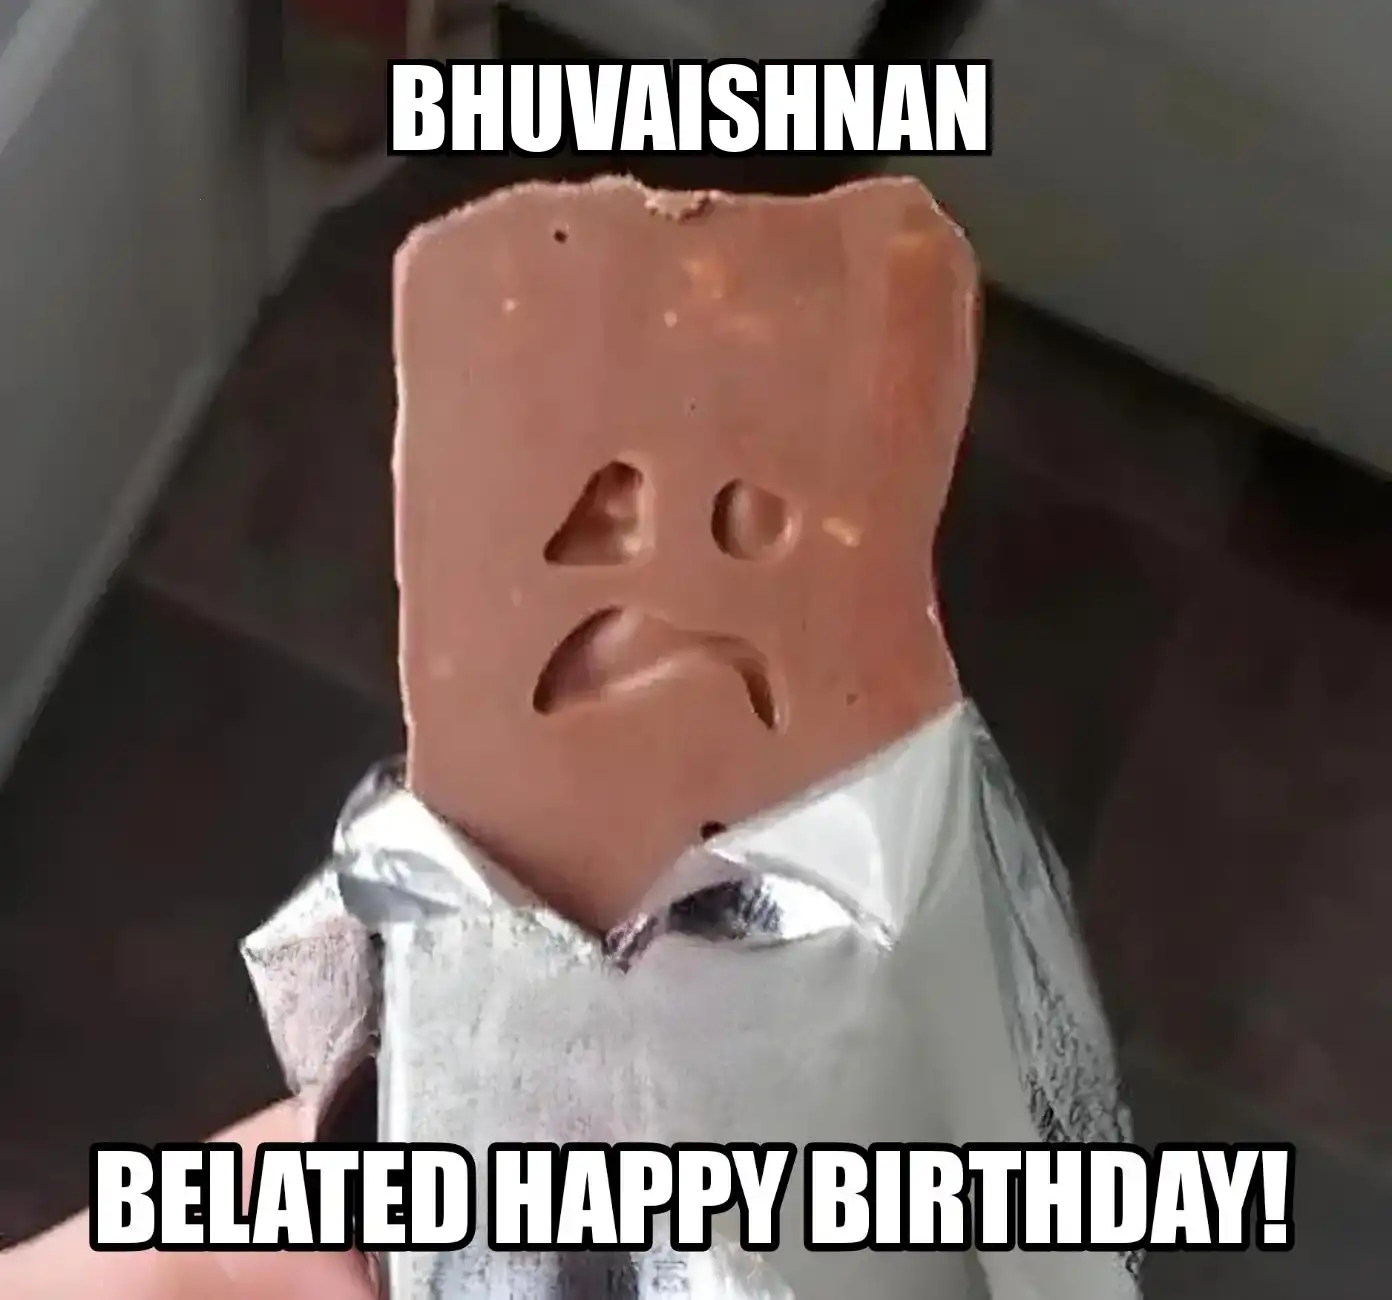 Happy Birthday Bhuvaishnan Belated Happy Birthday Meme